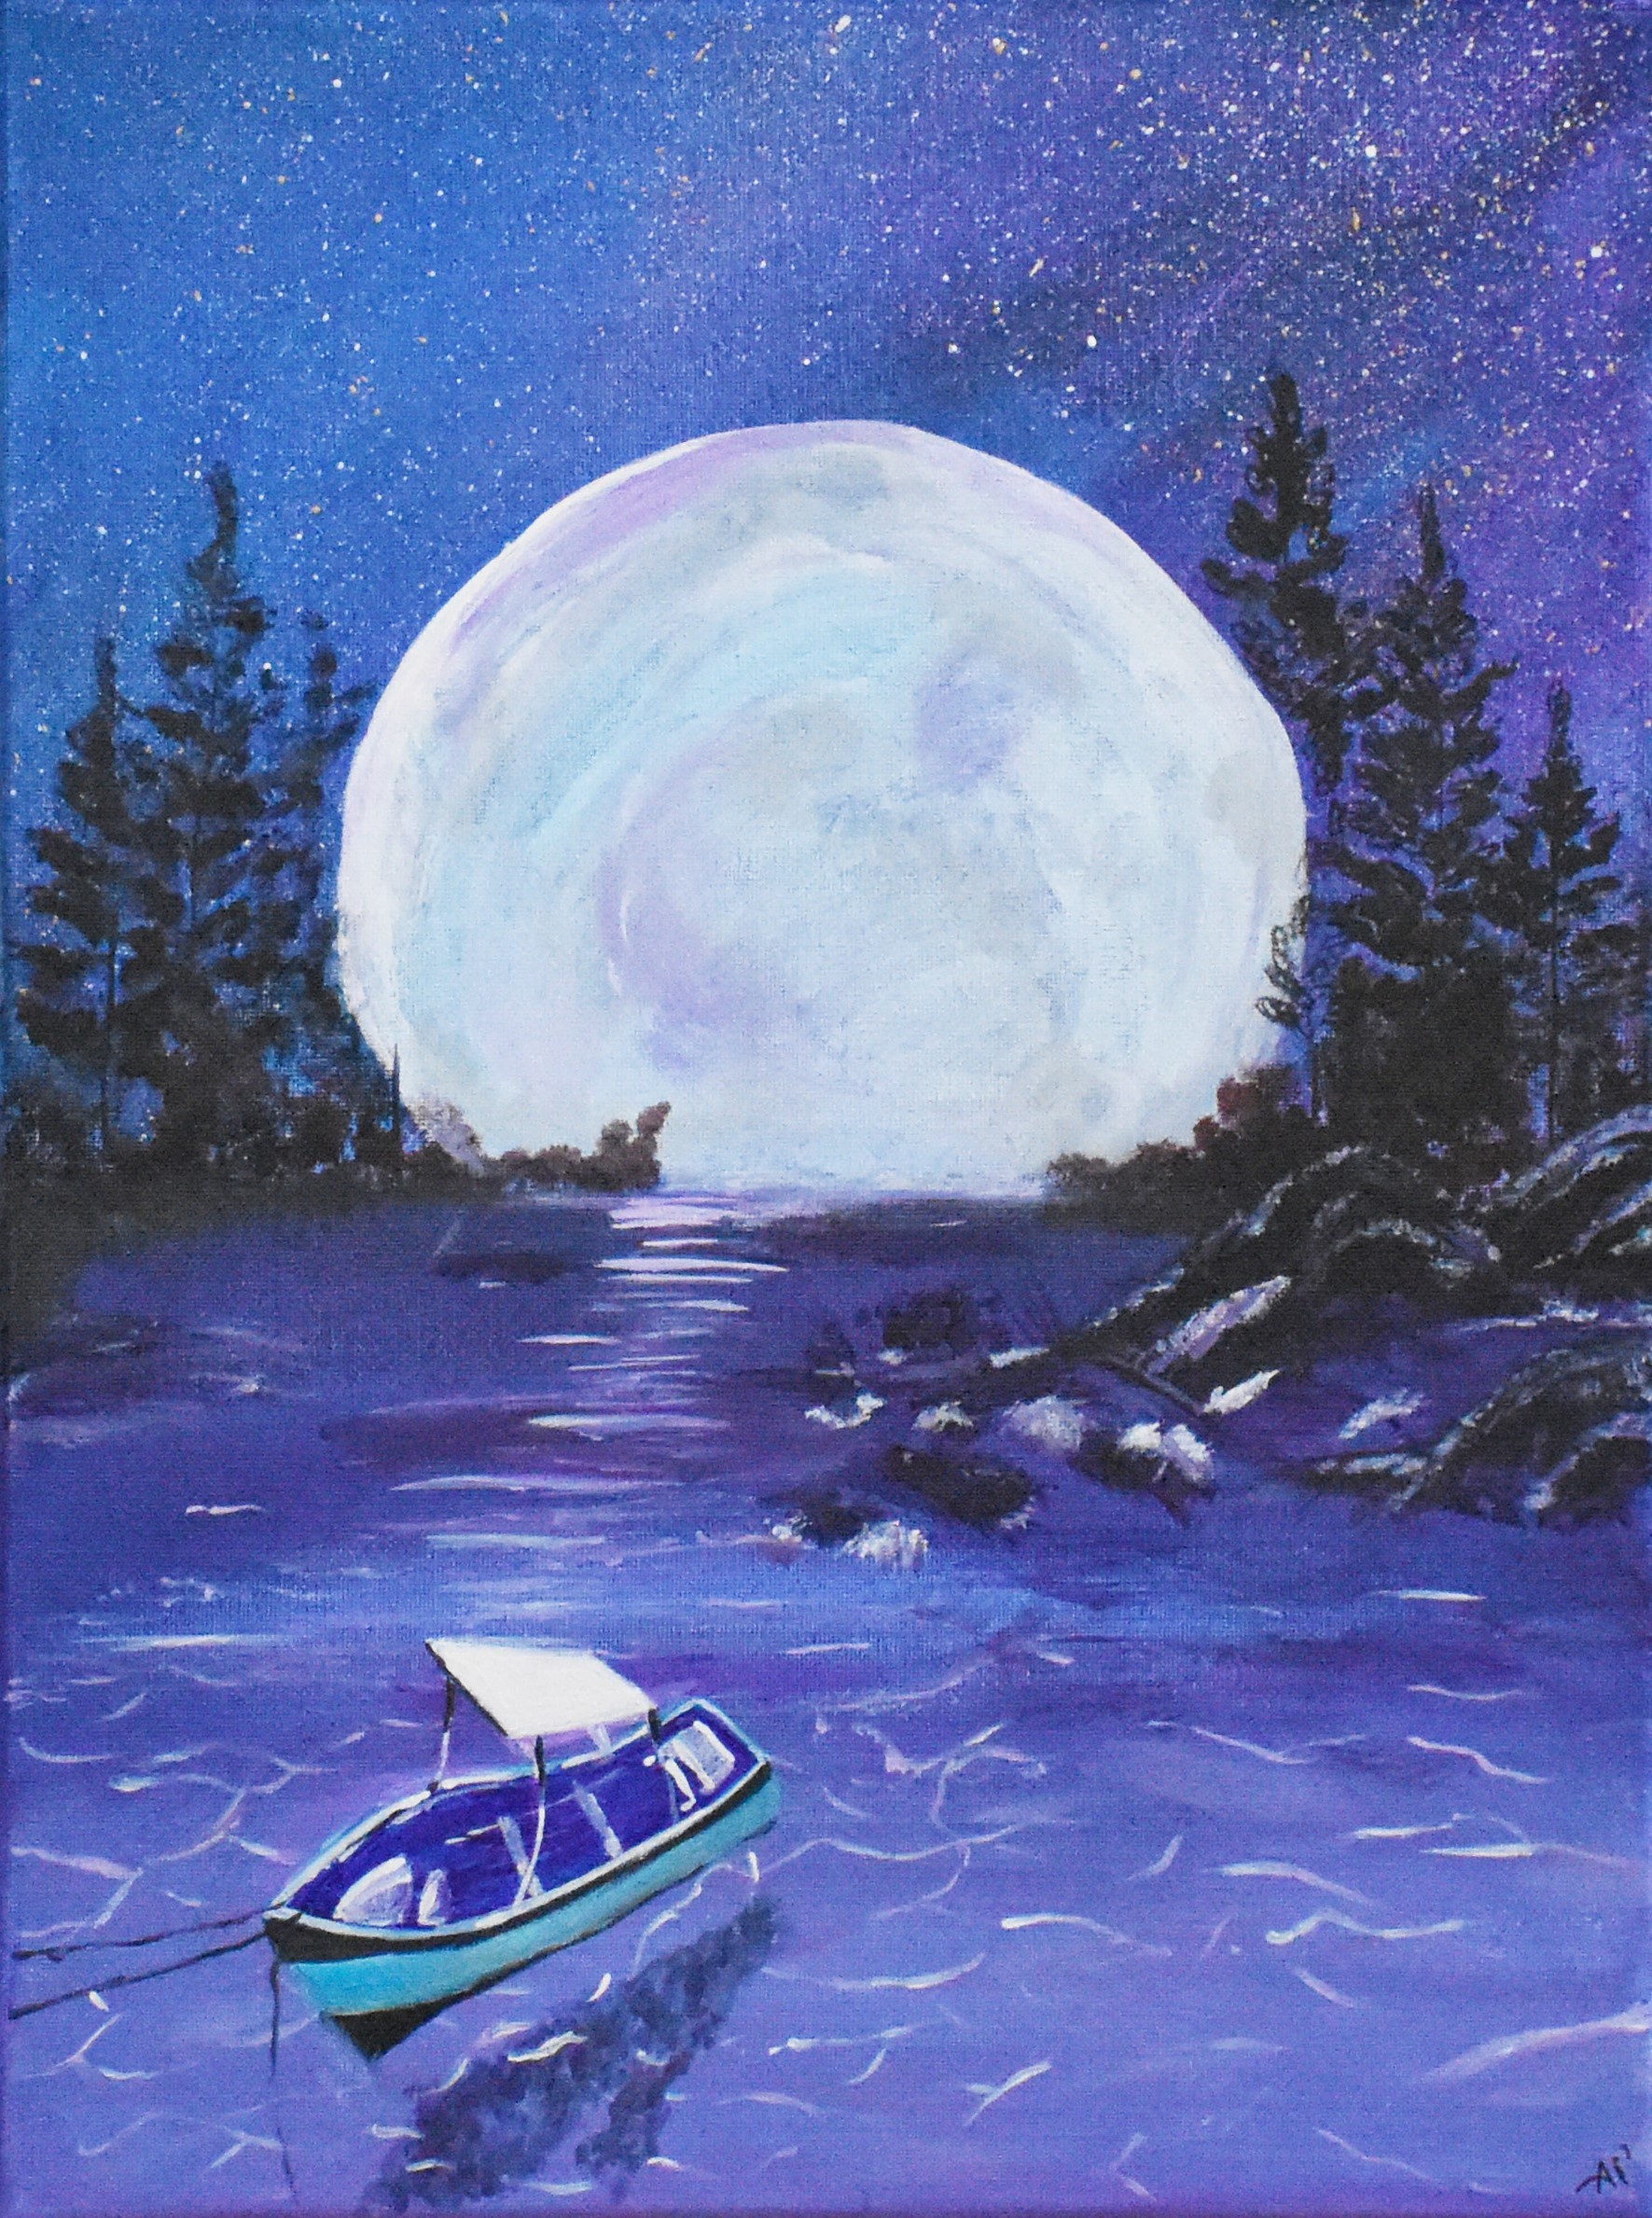 A Mystical Moonlit Night by Aysha Musthafa